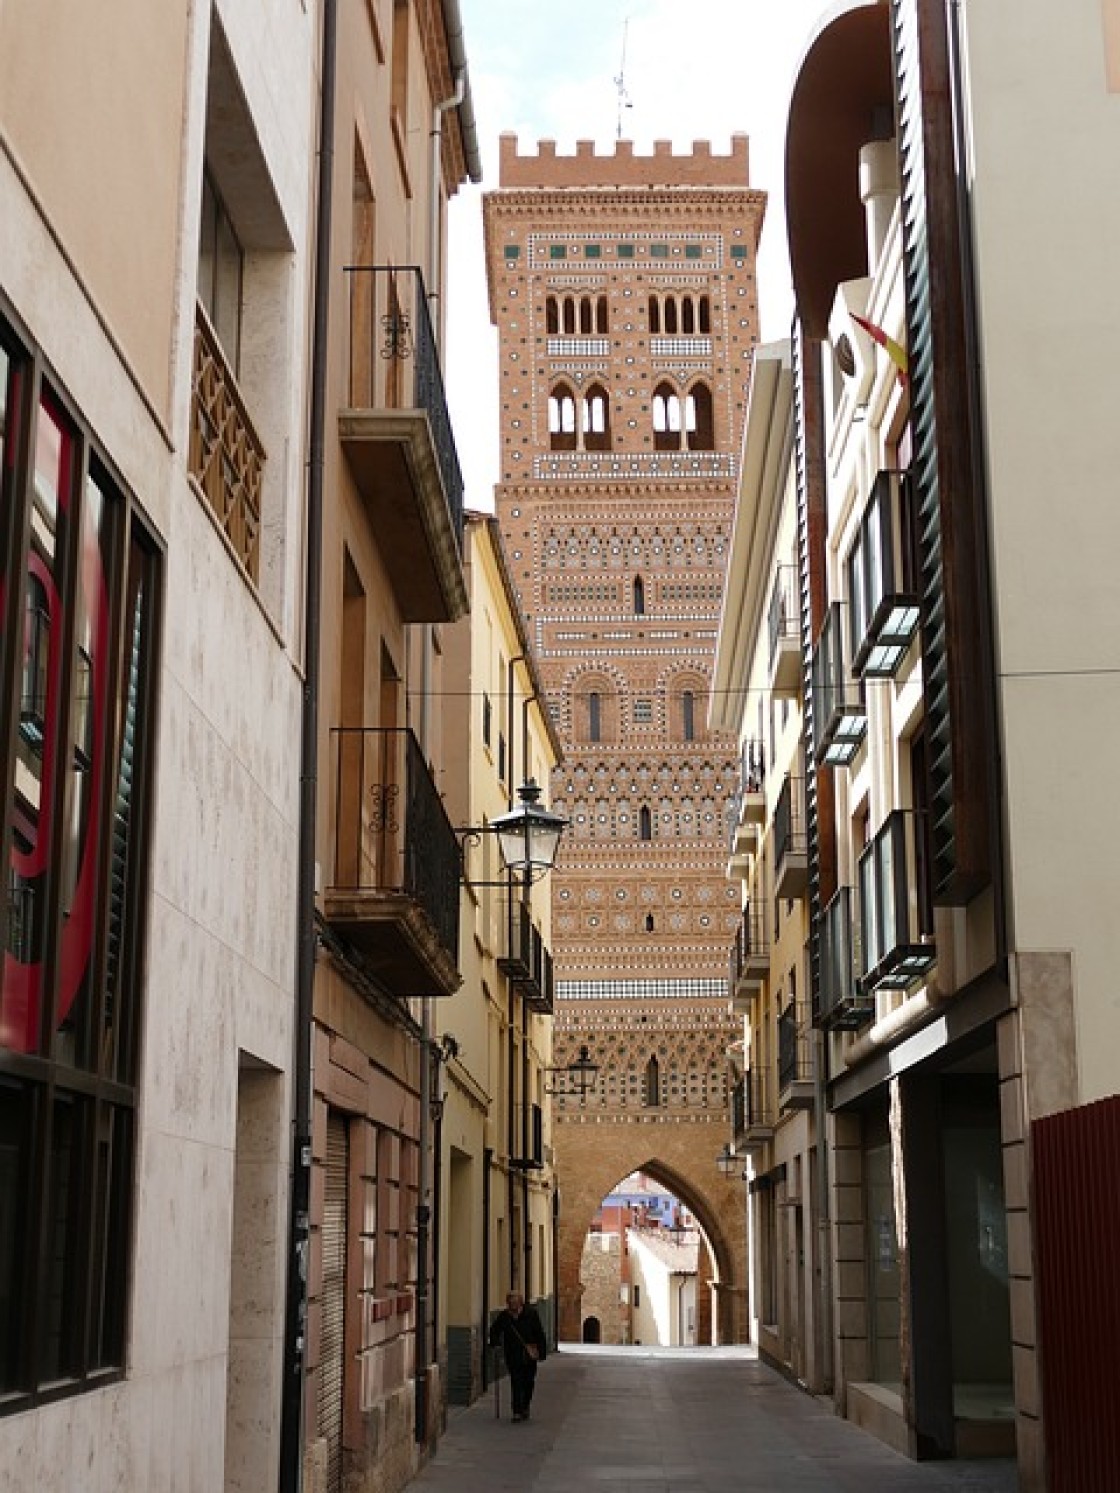 Descubre Teruel a fondo: conoce sus lugares más emblemáticos con expertos locales